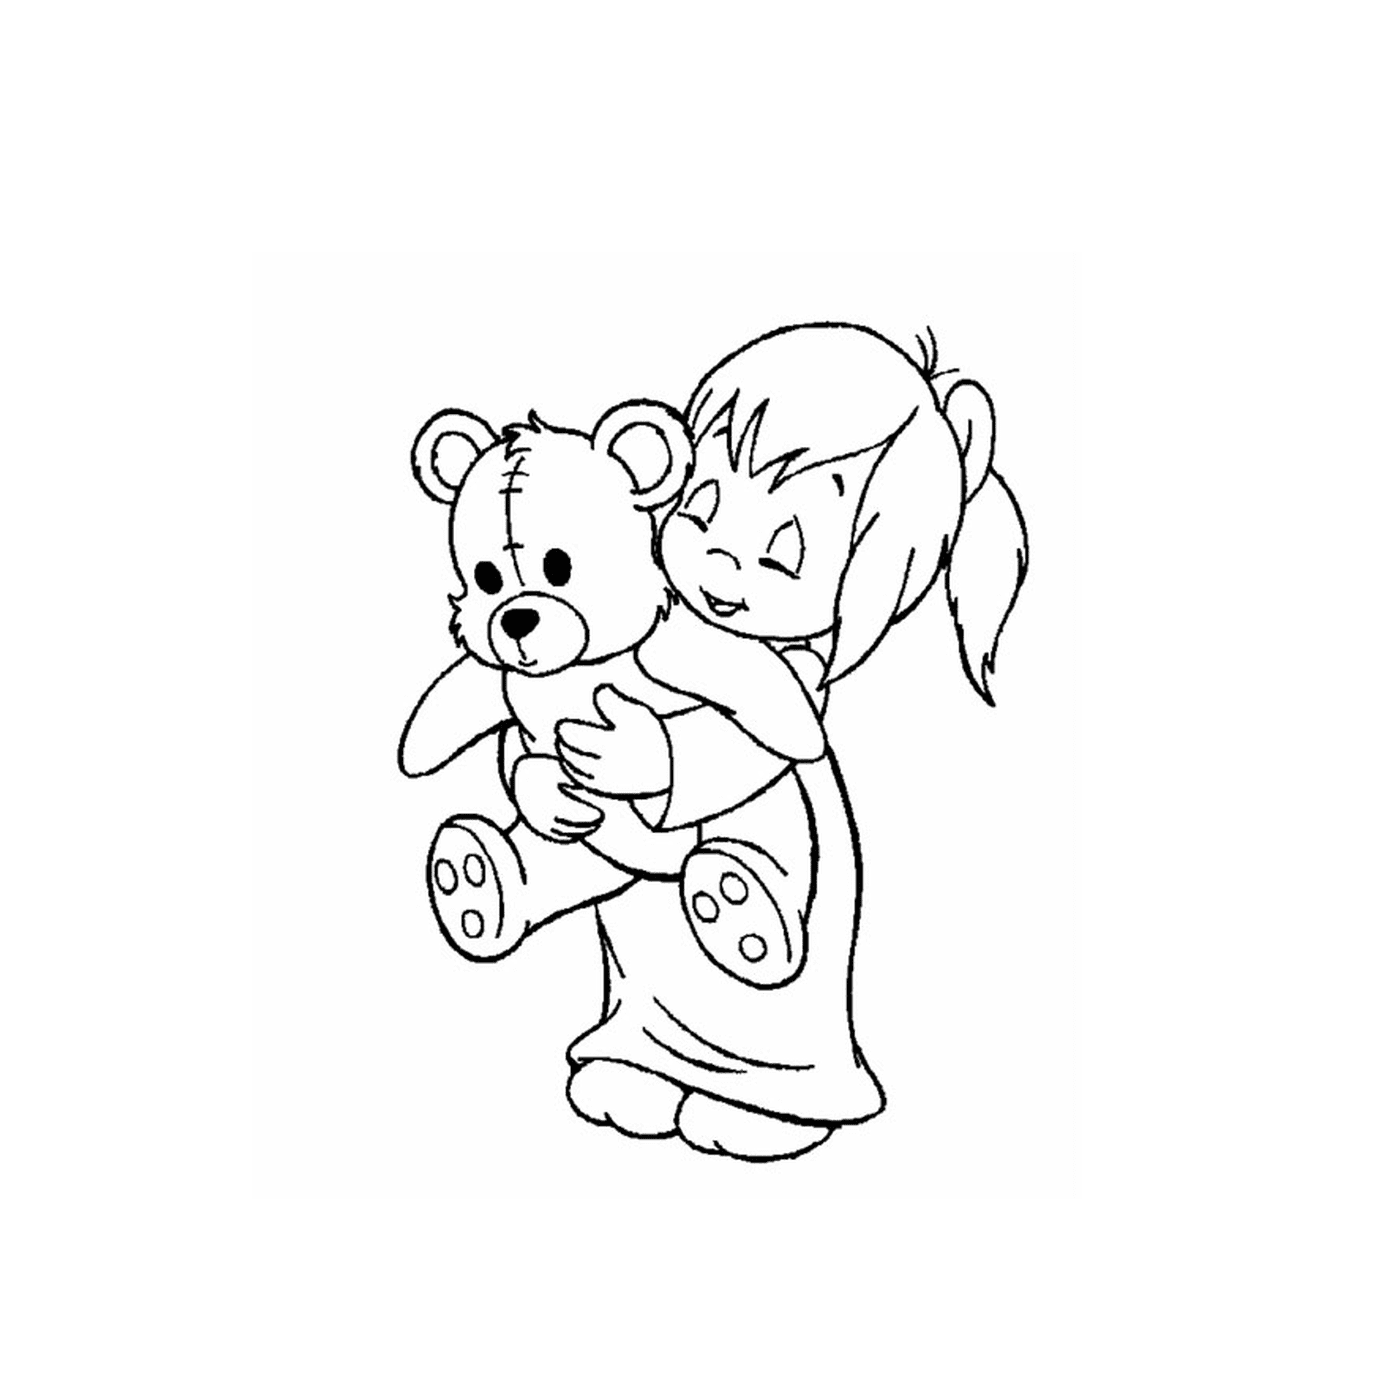  Uma menina segurando um ursinho de pelúcia em seus braços 